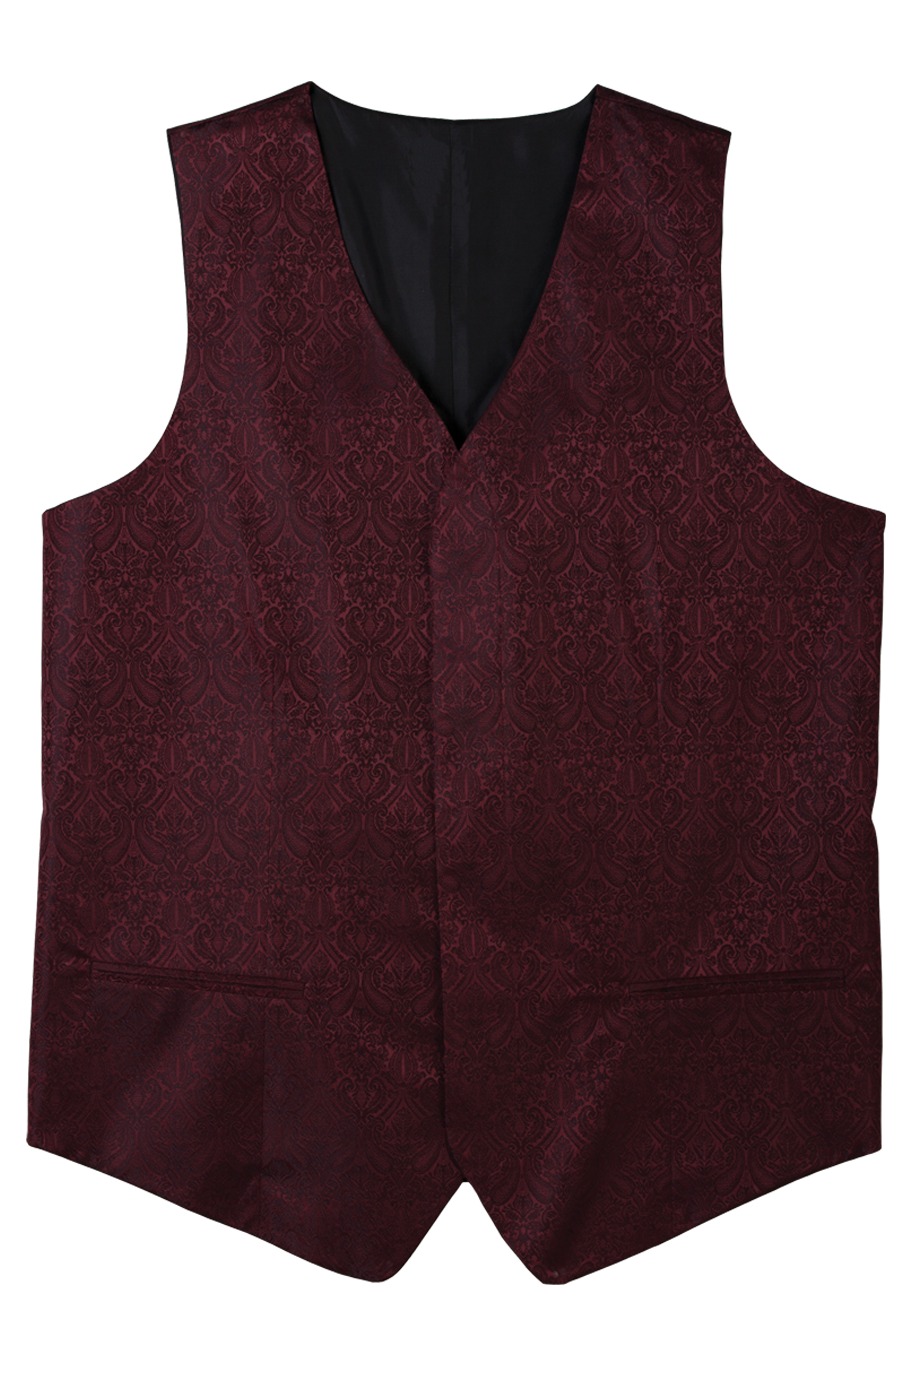 Edwards Garment 4491 - Men's Paisley Vest